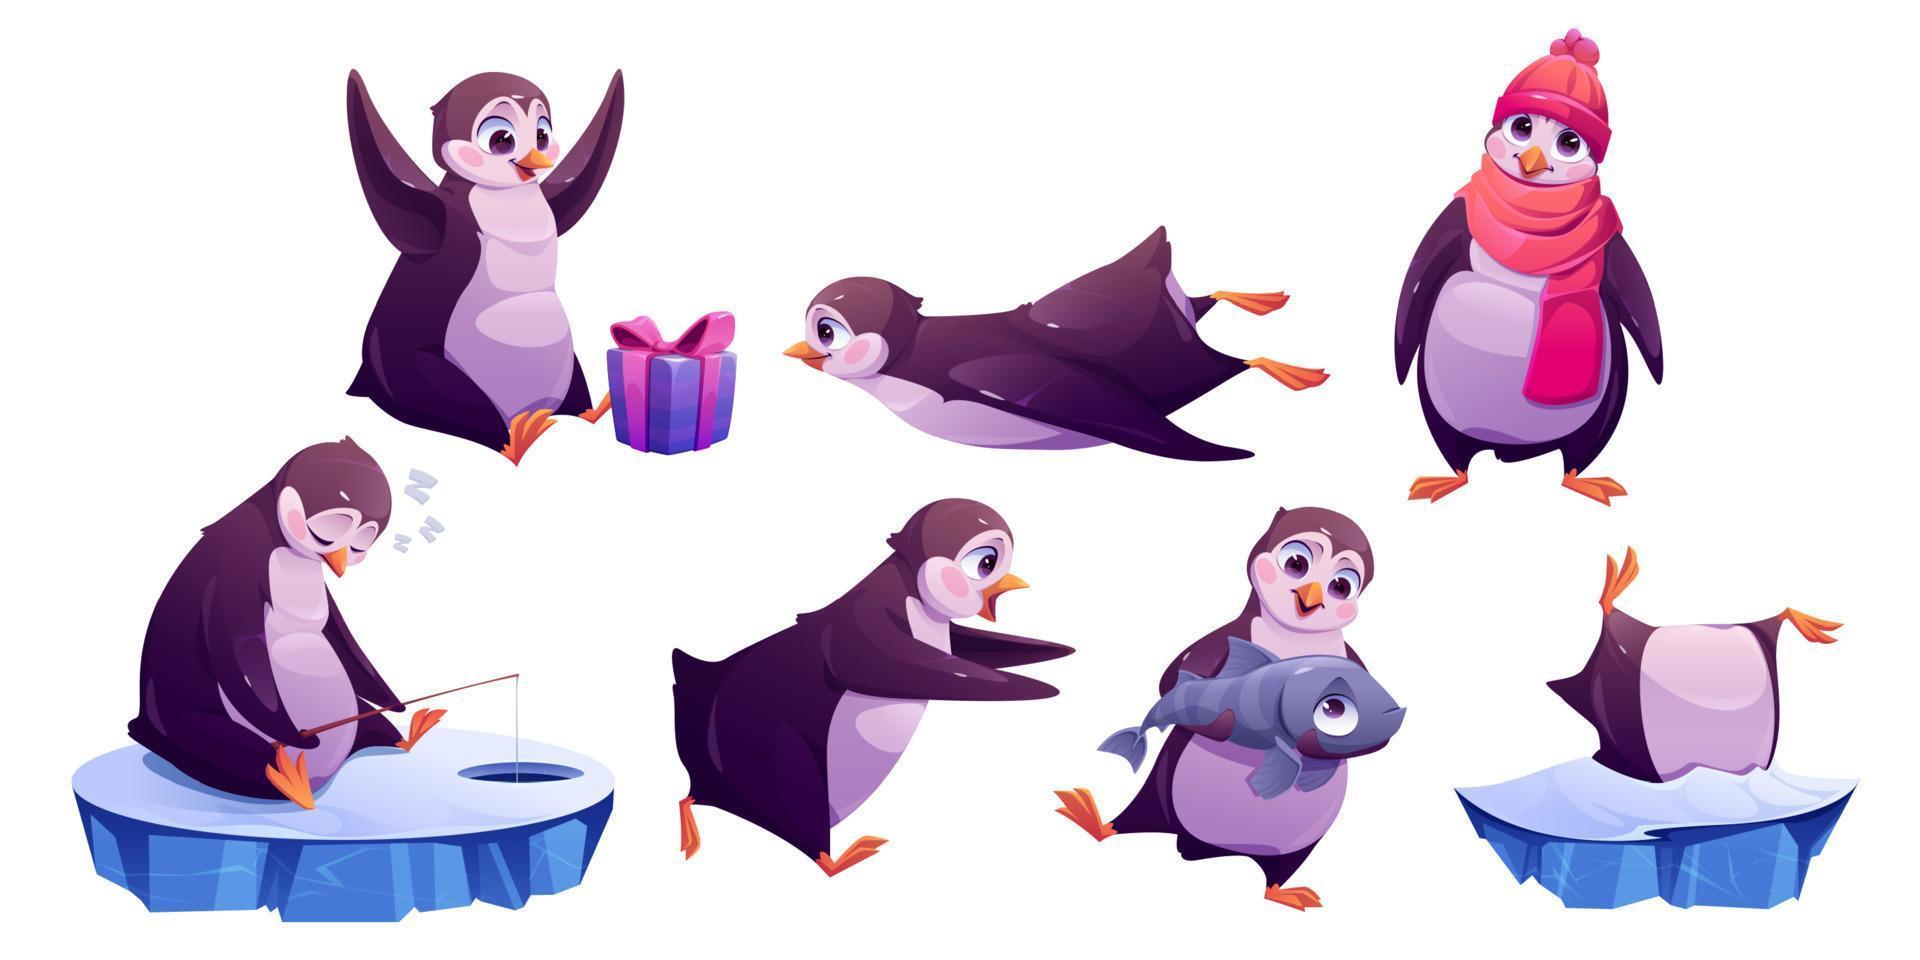 söt pingvin i annorlunda poser i vinter- vektor